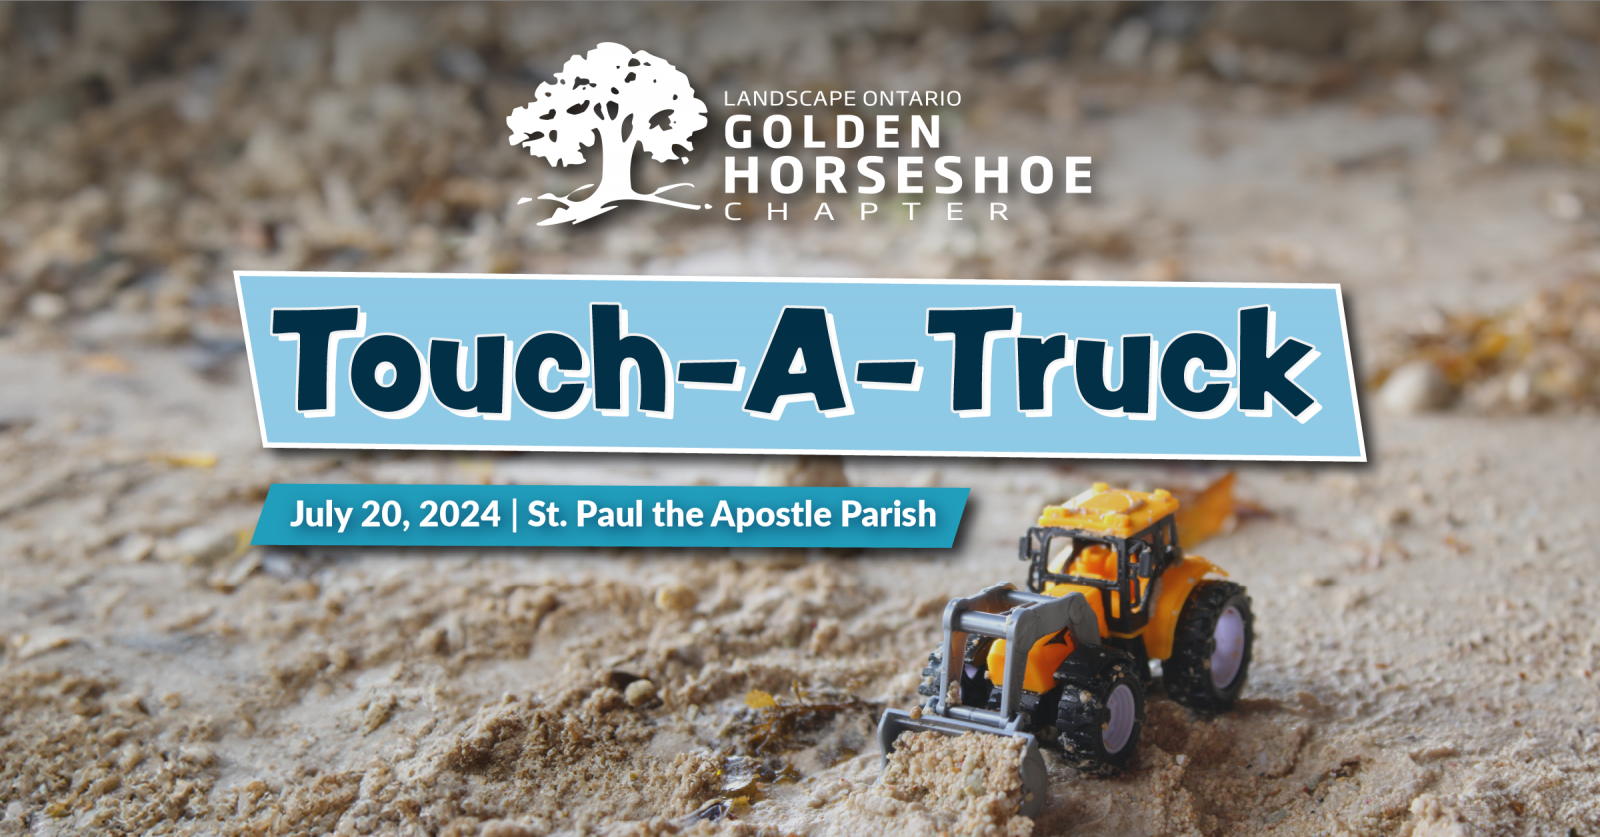 Golden Horseshoe Chapter Touch-A-Truck 2024